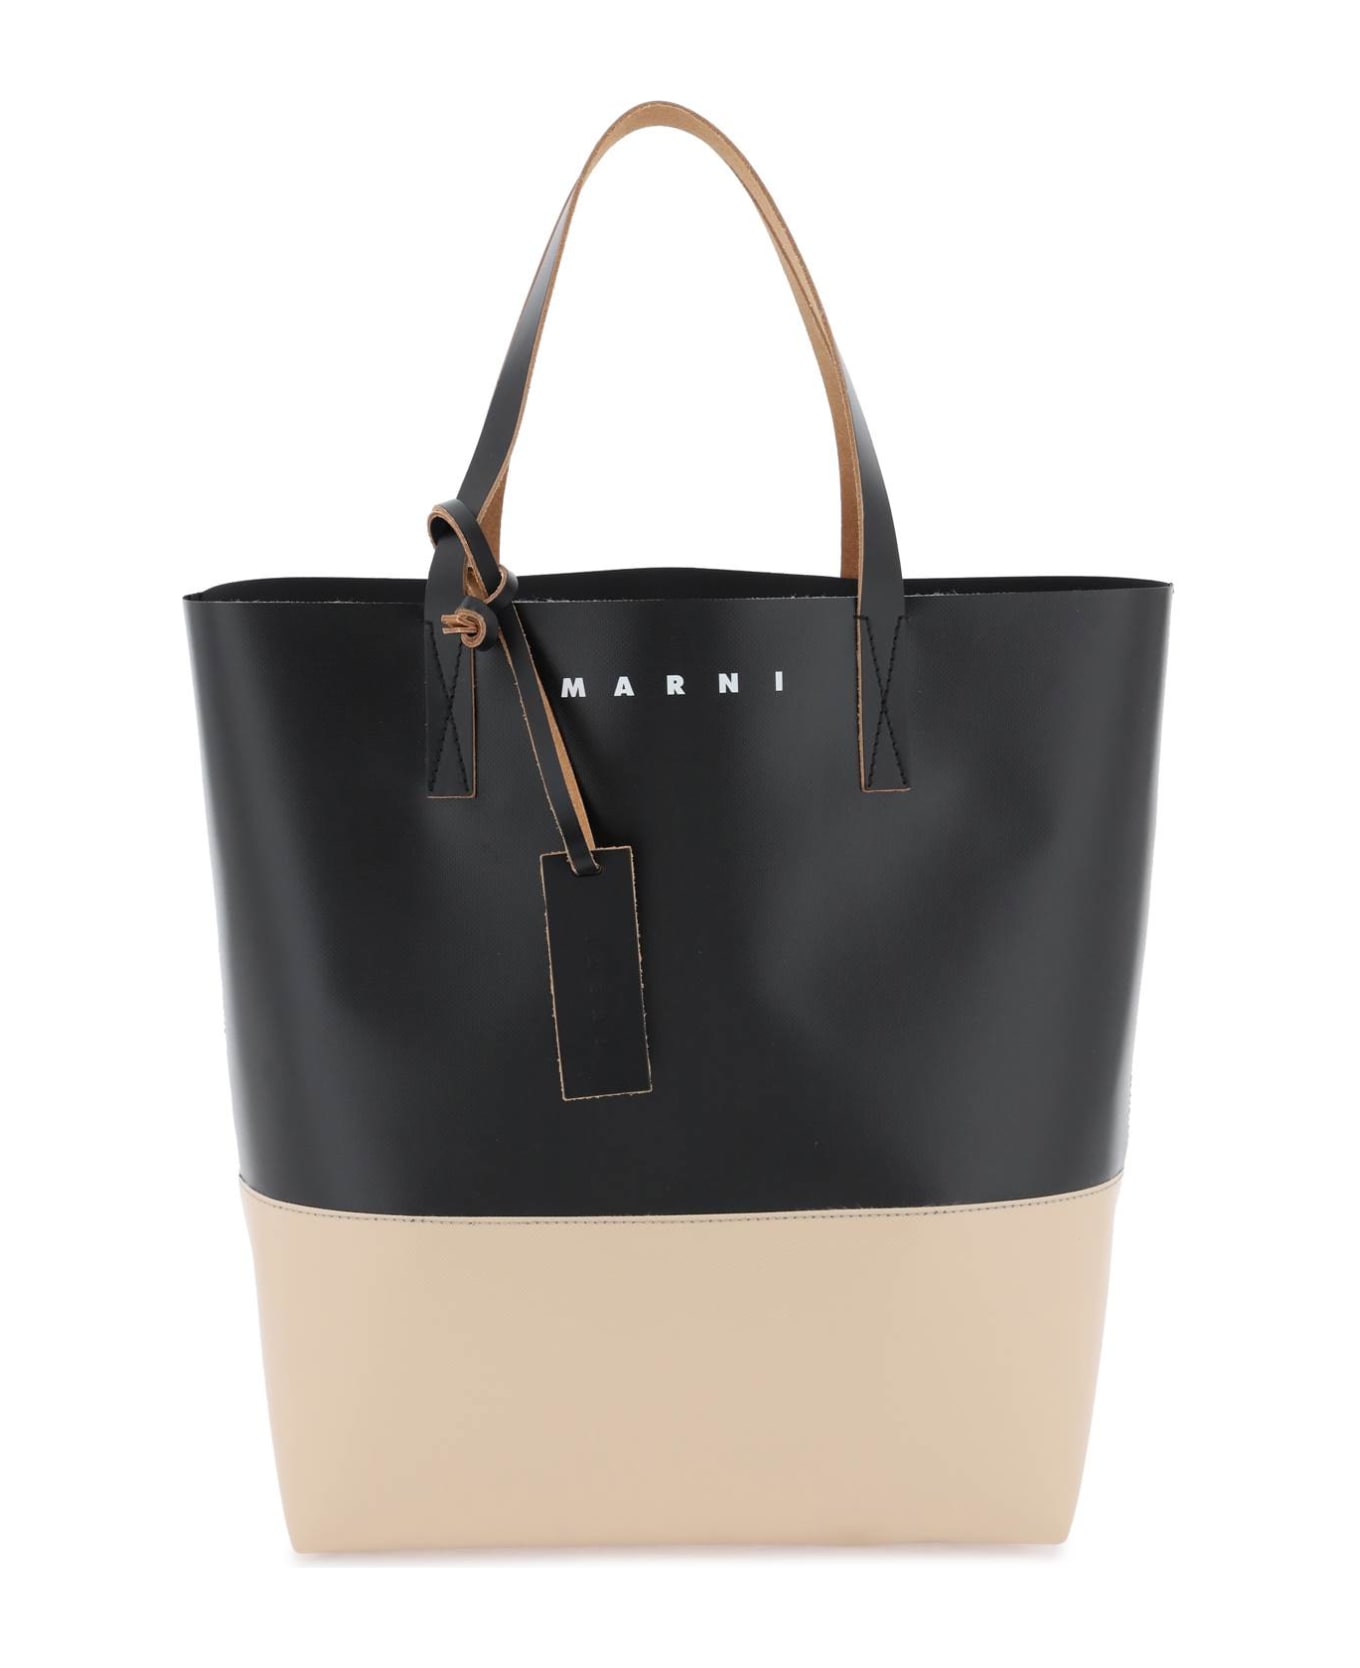 Marni Tribeca Shopping Bag - BLACK CORK (Beige)